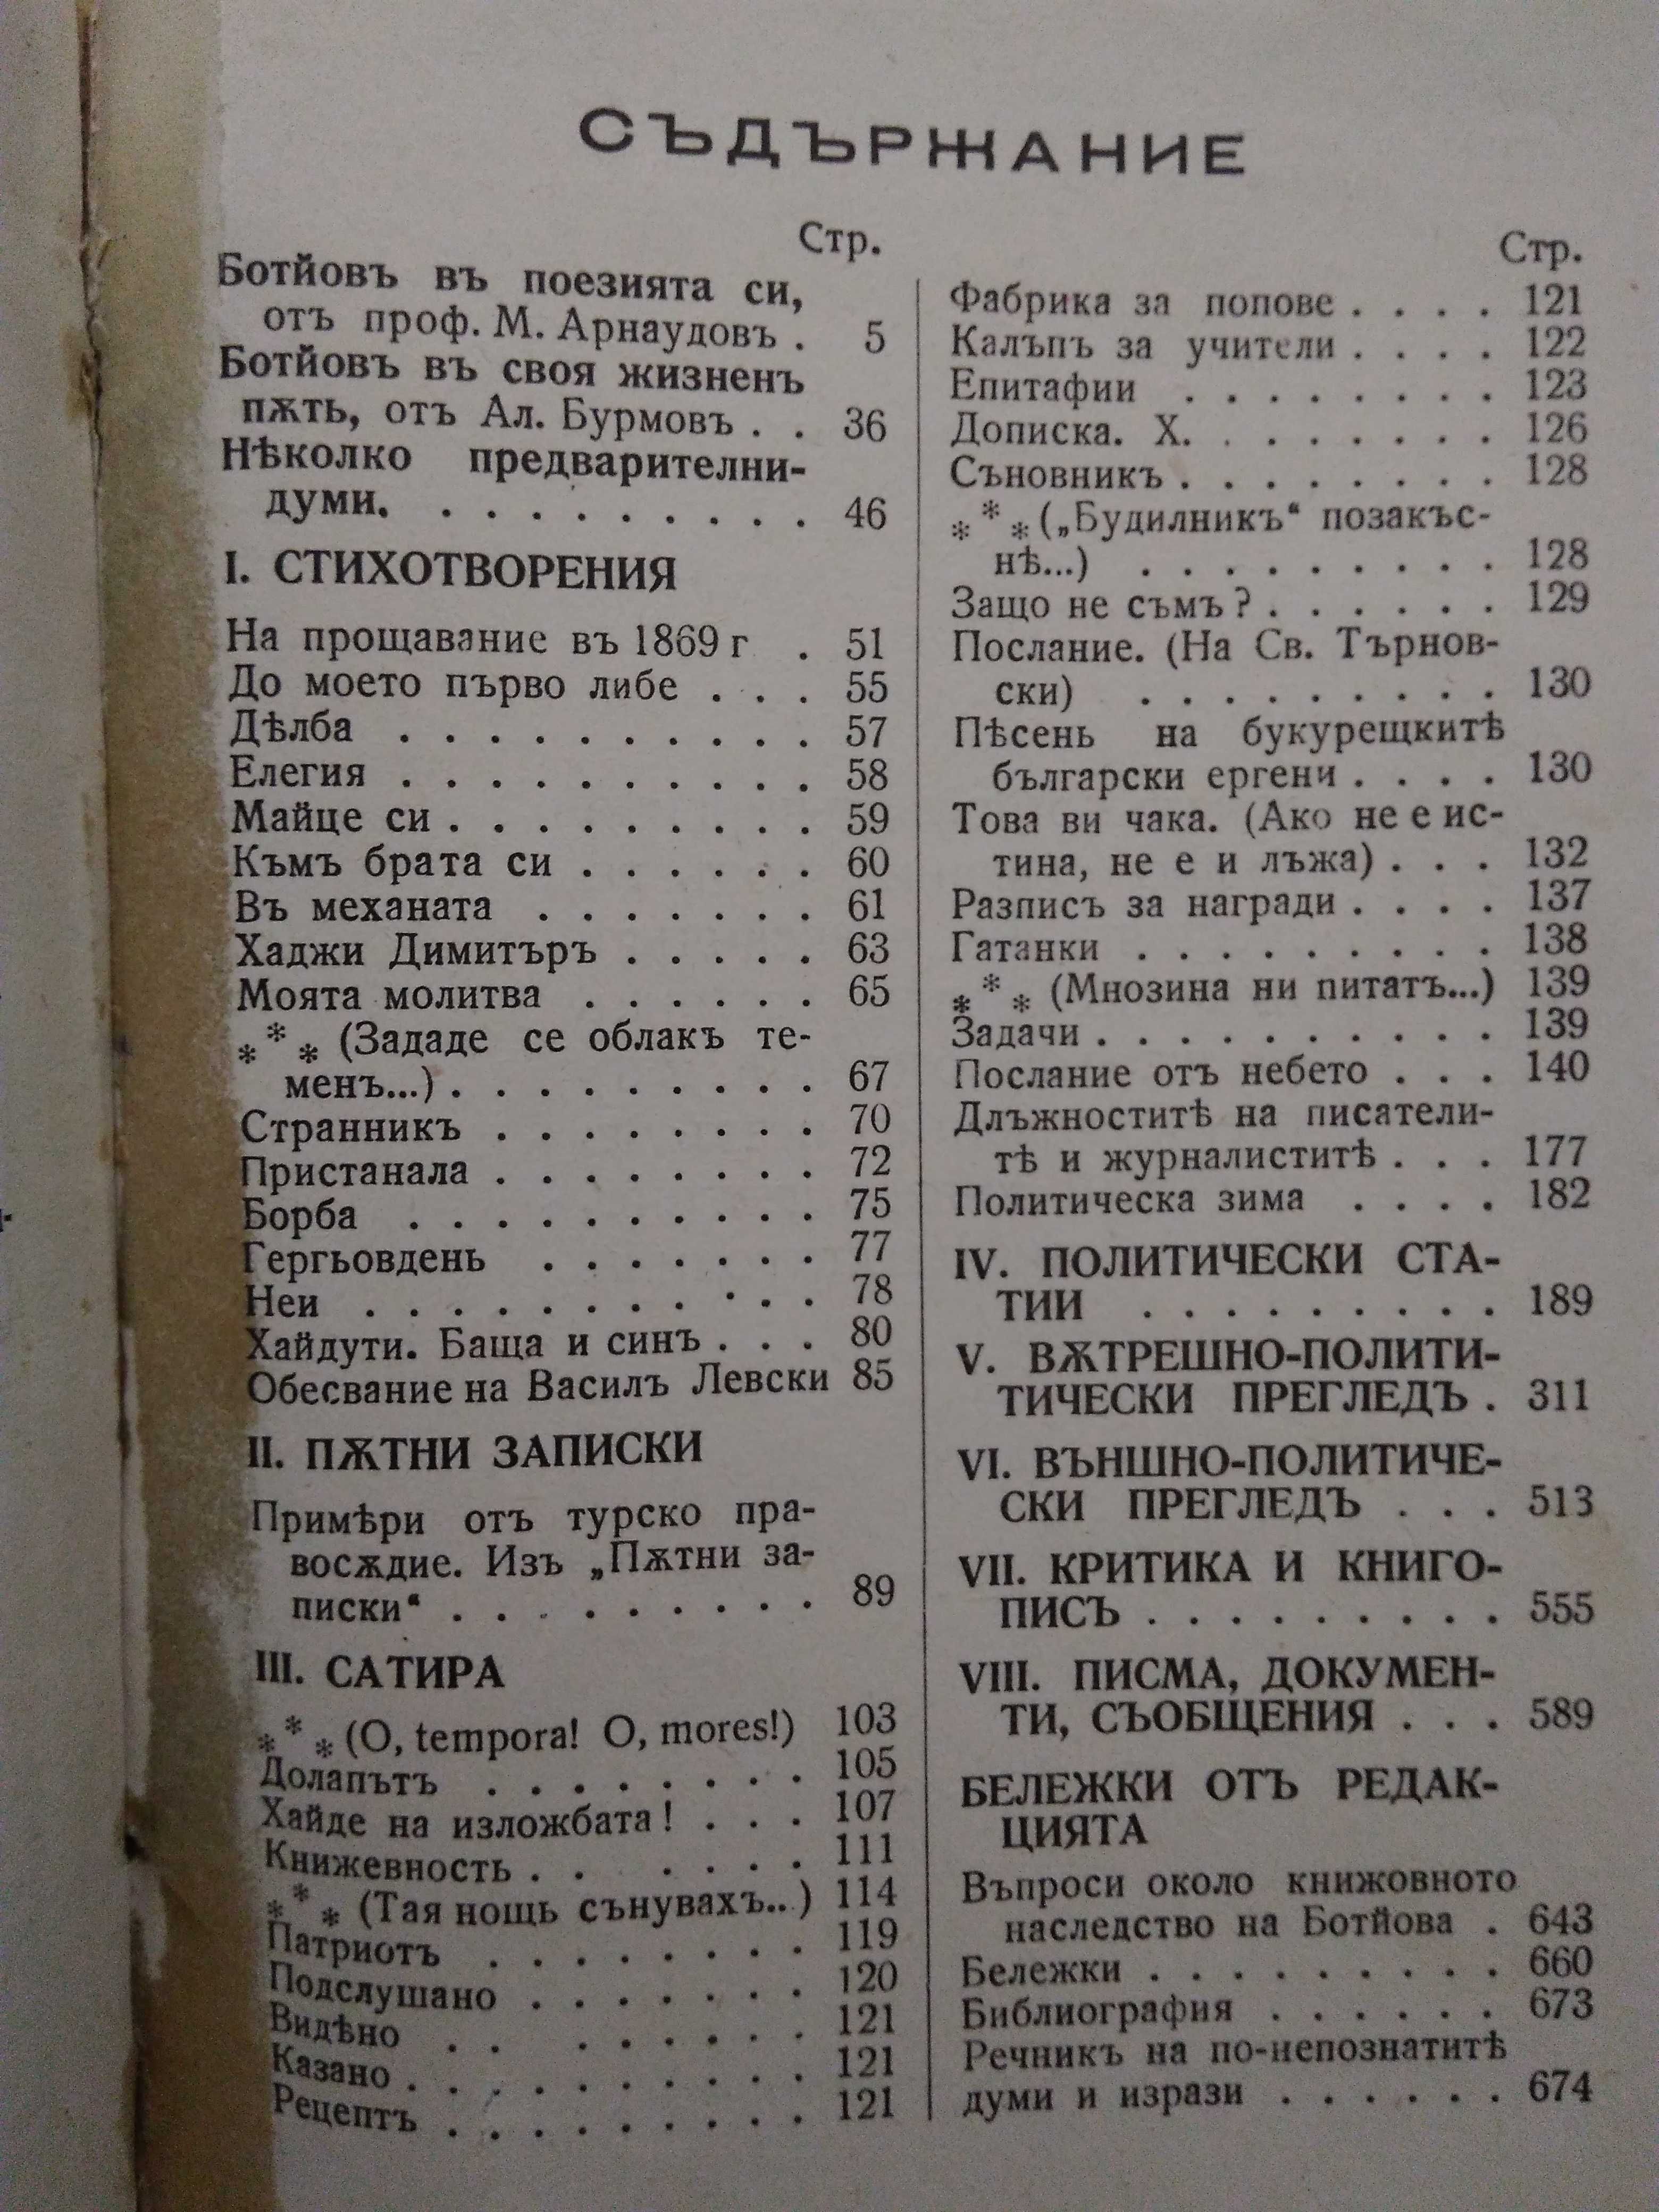 "Христо Ботев - Съчинения" и "Исторически роман" - Антикварни книги